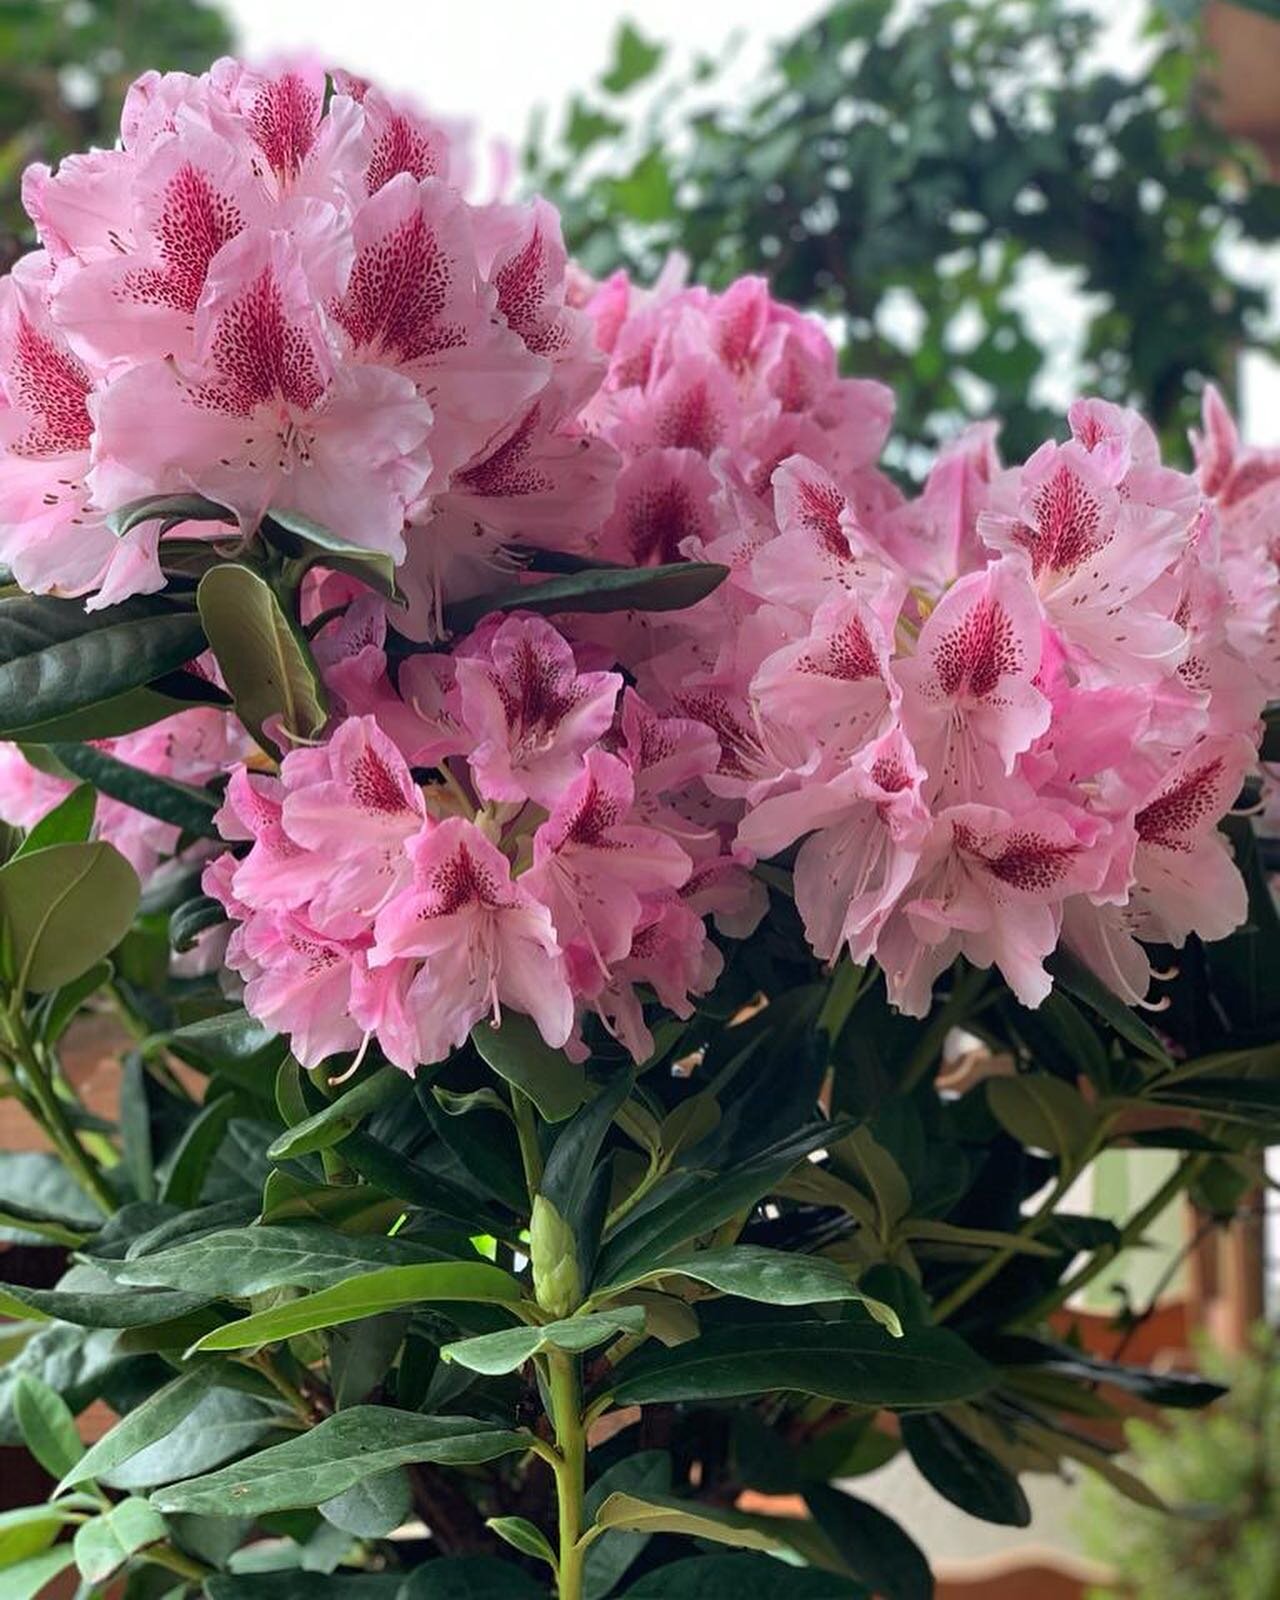 🌸Legno Garden si tinge di rosa per il Giro d&rsquo;Italia!
☀️Buona visione a tutti!